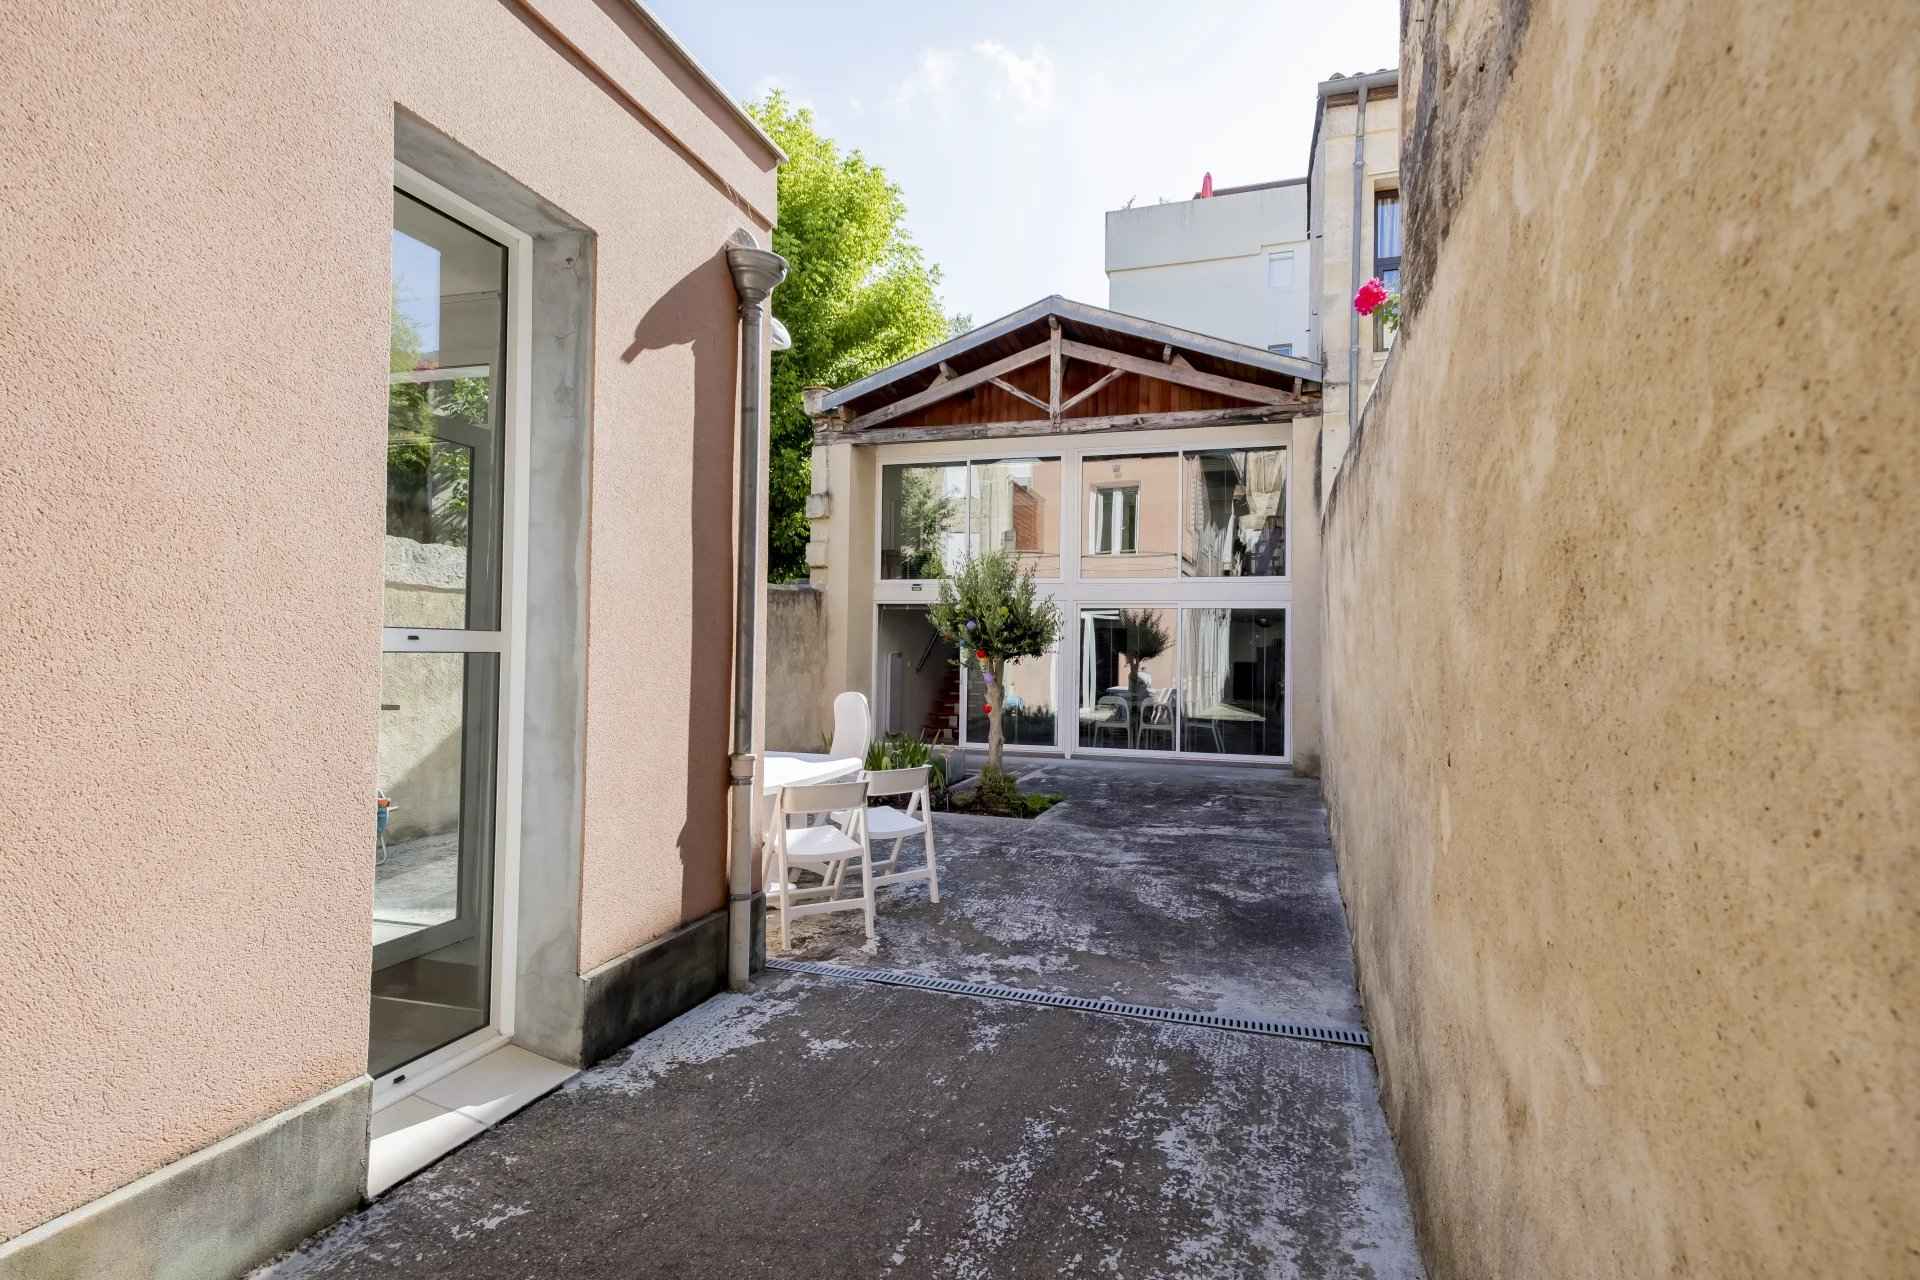 Maisons à vendre Bordeaux Fondaudège de 215 m2